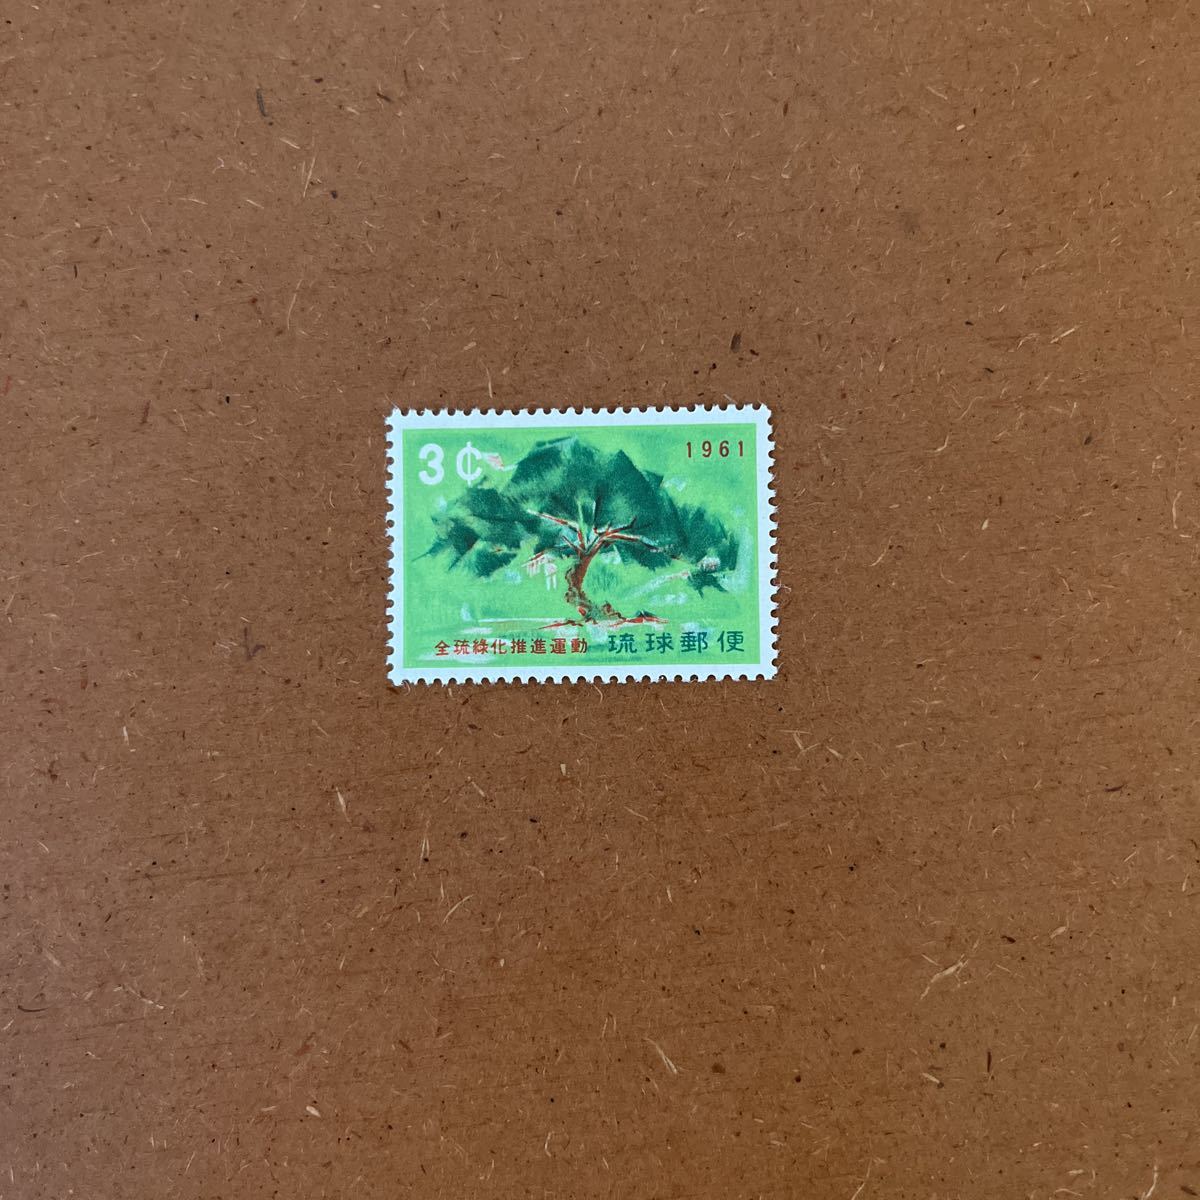 琉球切手・未使用切手・1961年・全琉緑化 ・3¢・松  ・沖縄の画像1